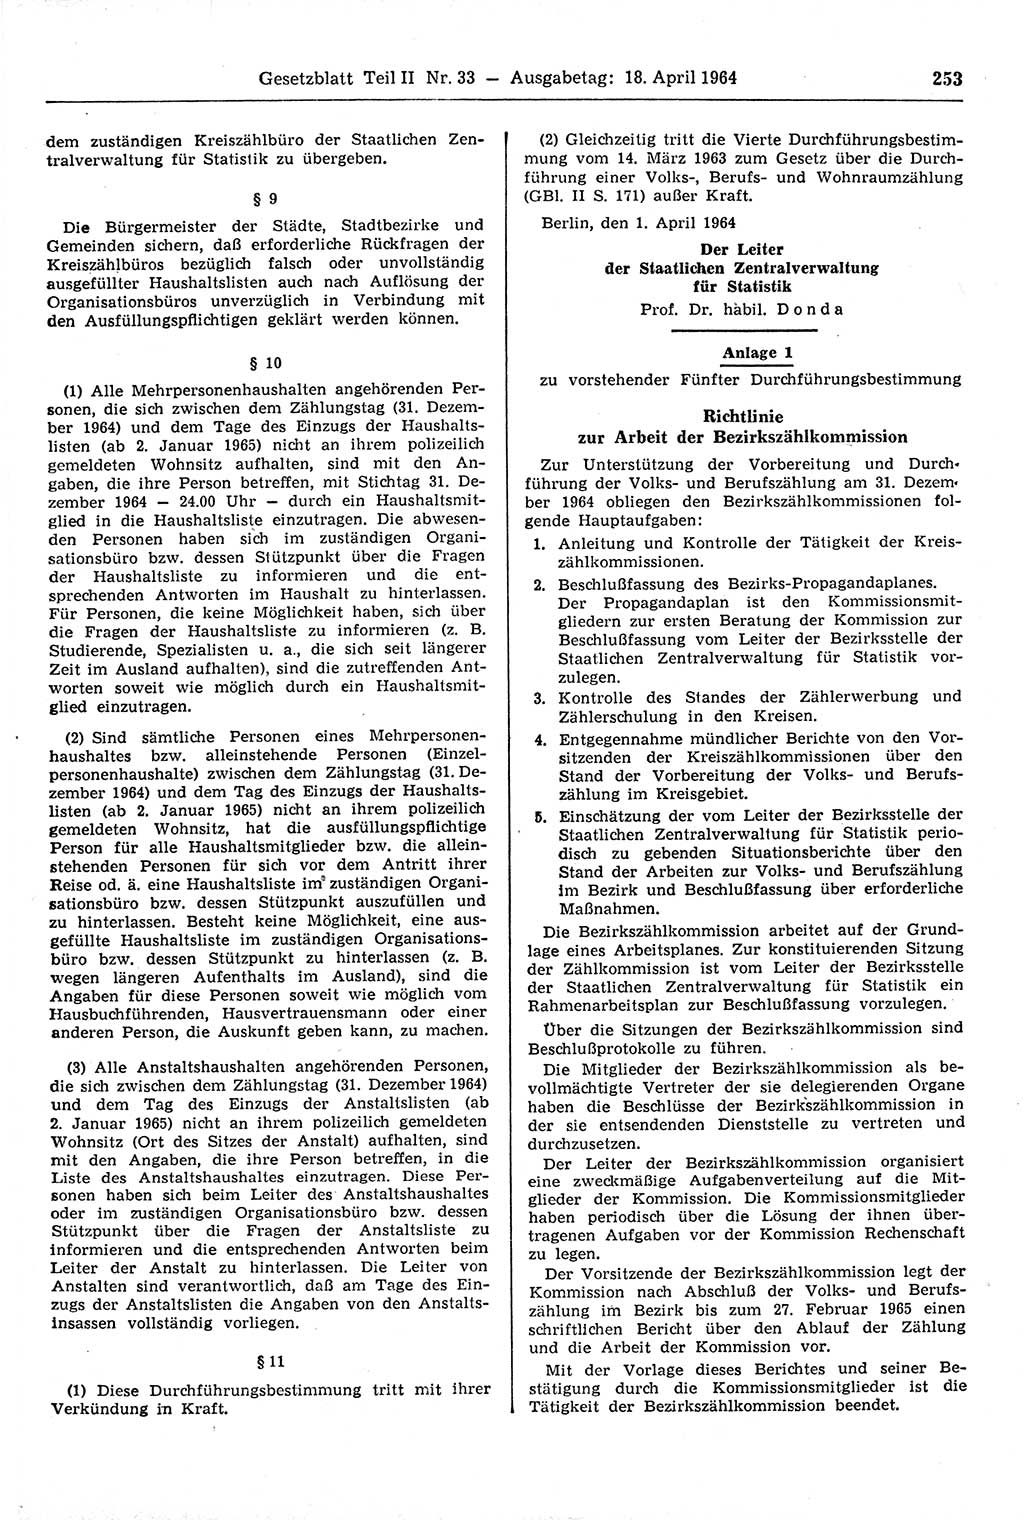 Gesetzblatt (GBl.) der Deutschen Demokratischen Republik (DDR) Teil ⅠⅠ 1964, Seite 253 (GBl. DDR ⅠⅠ 1964, S. 253)